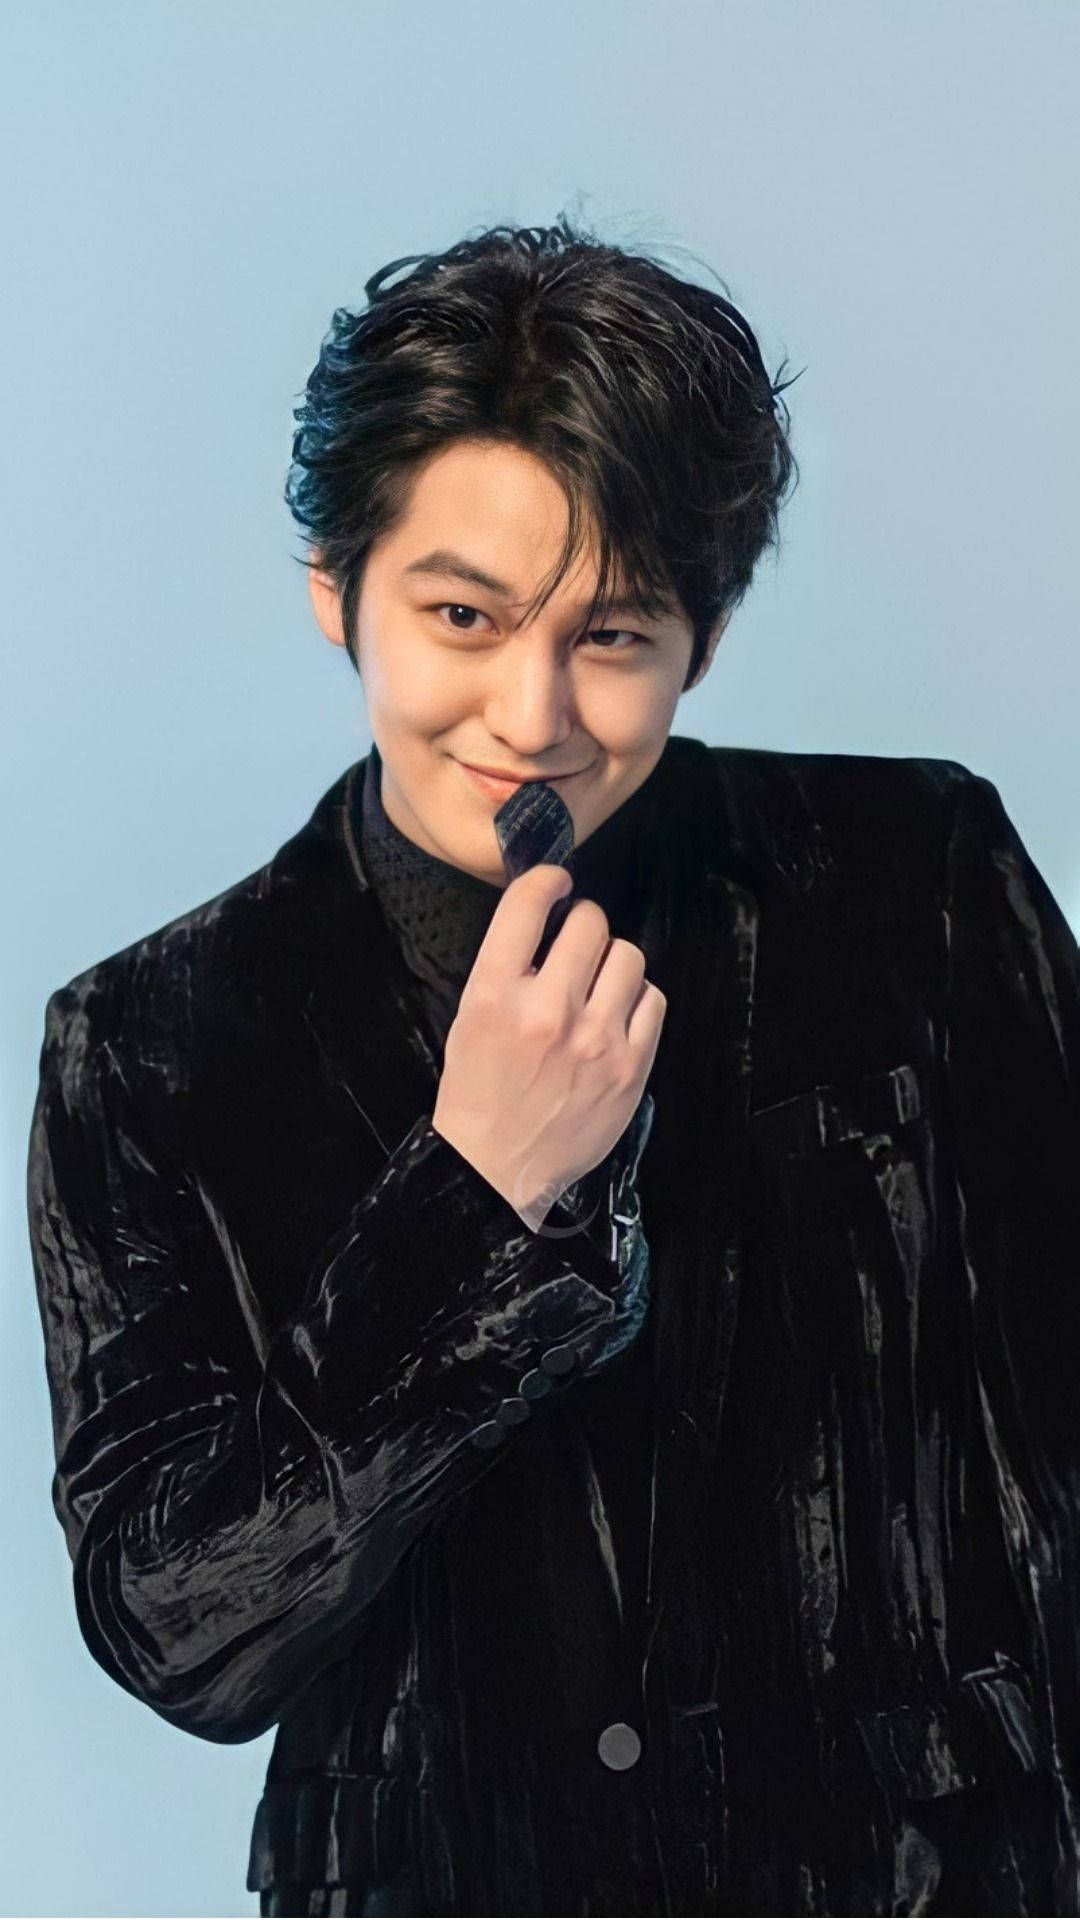 Kim Bum Black Velvet Suit Wallpaper